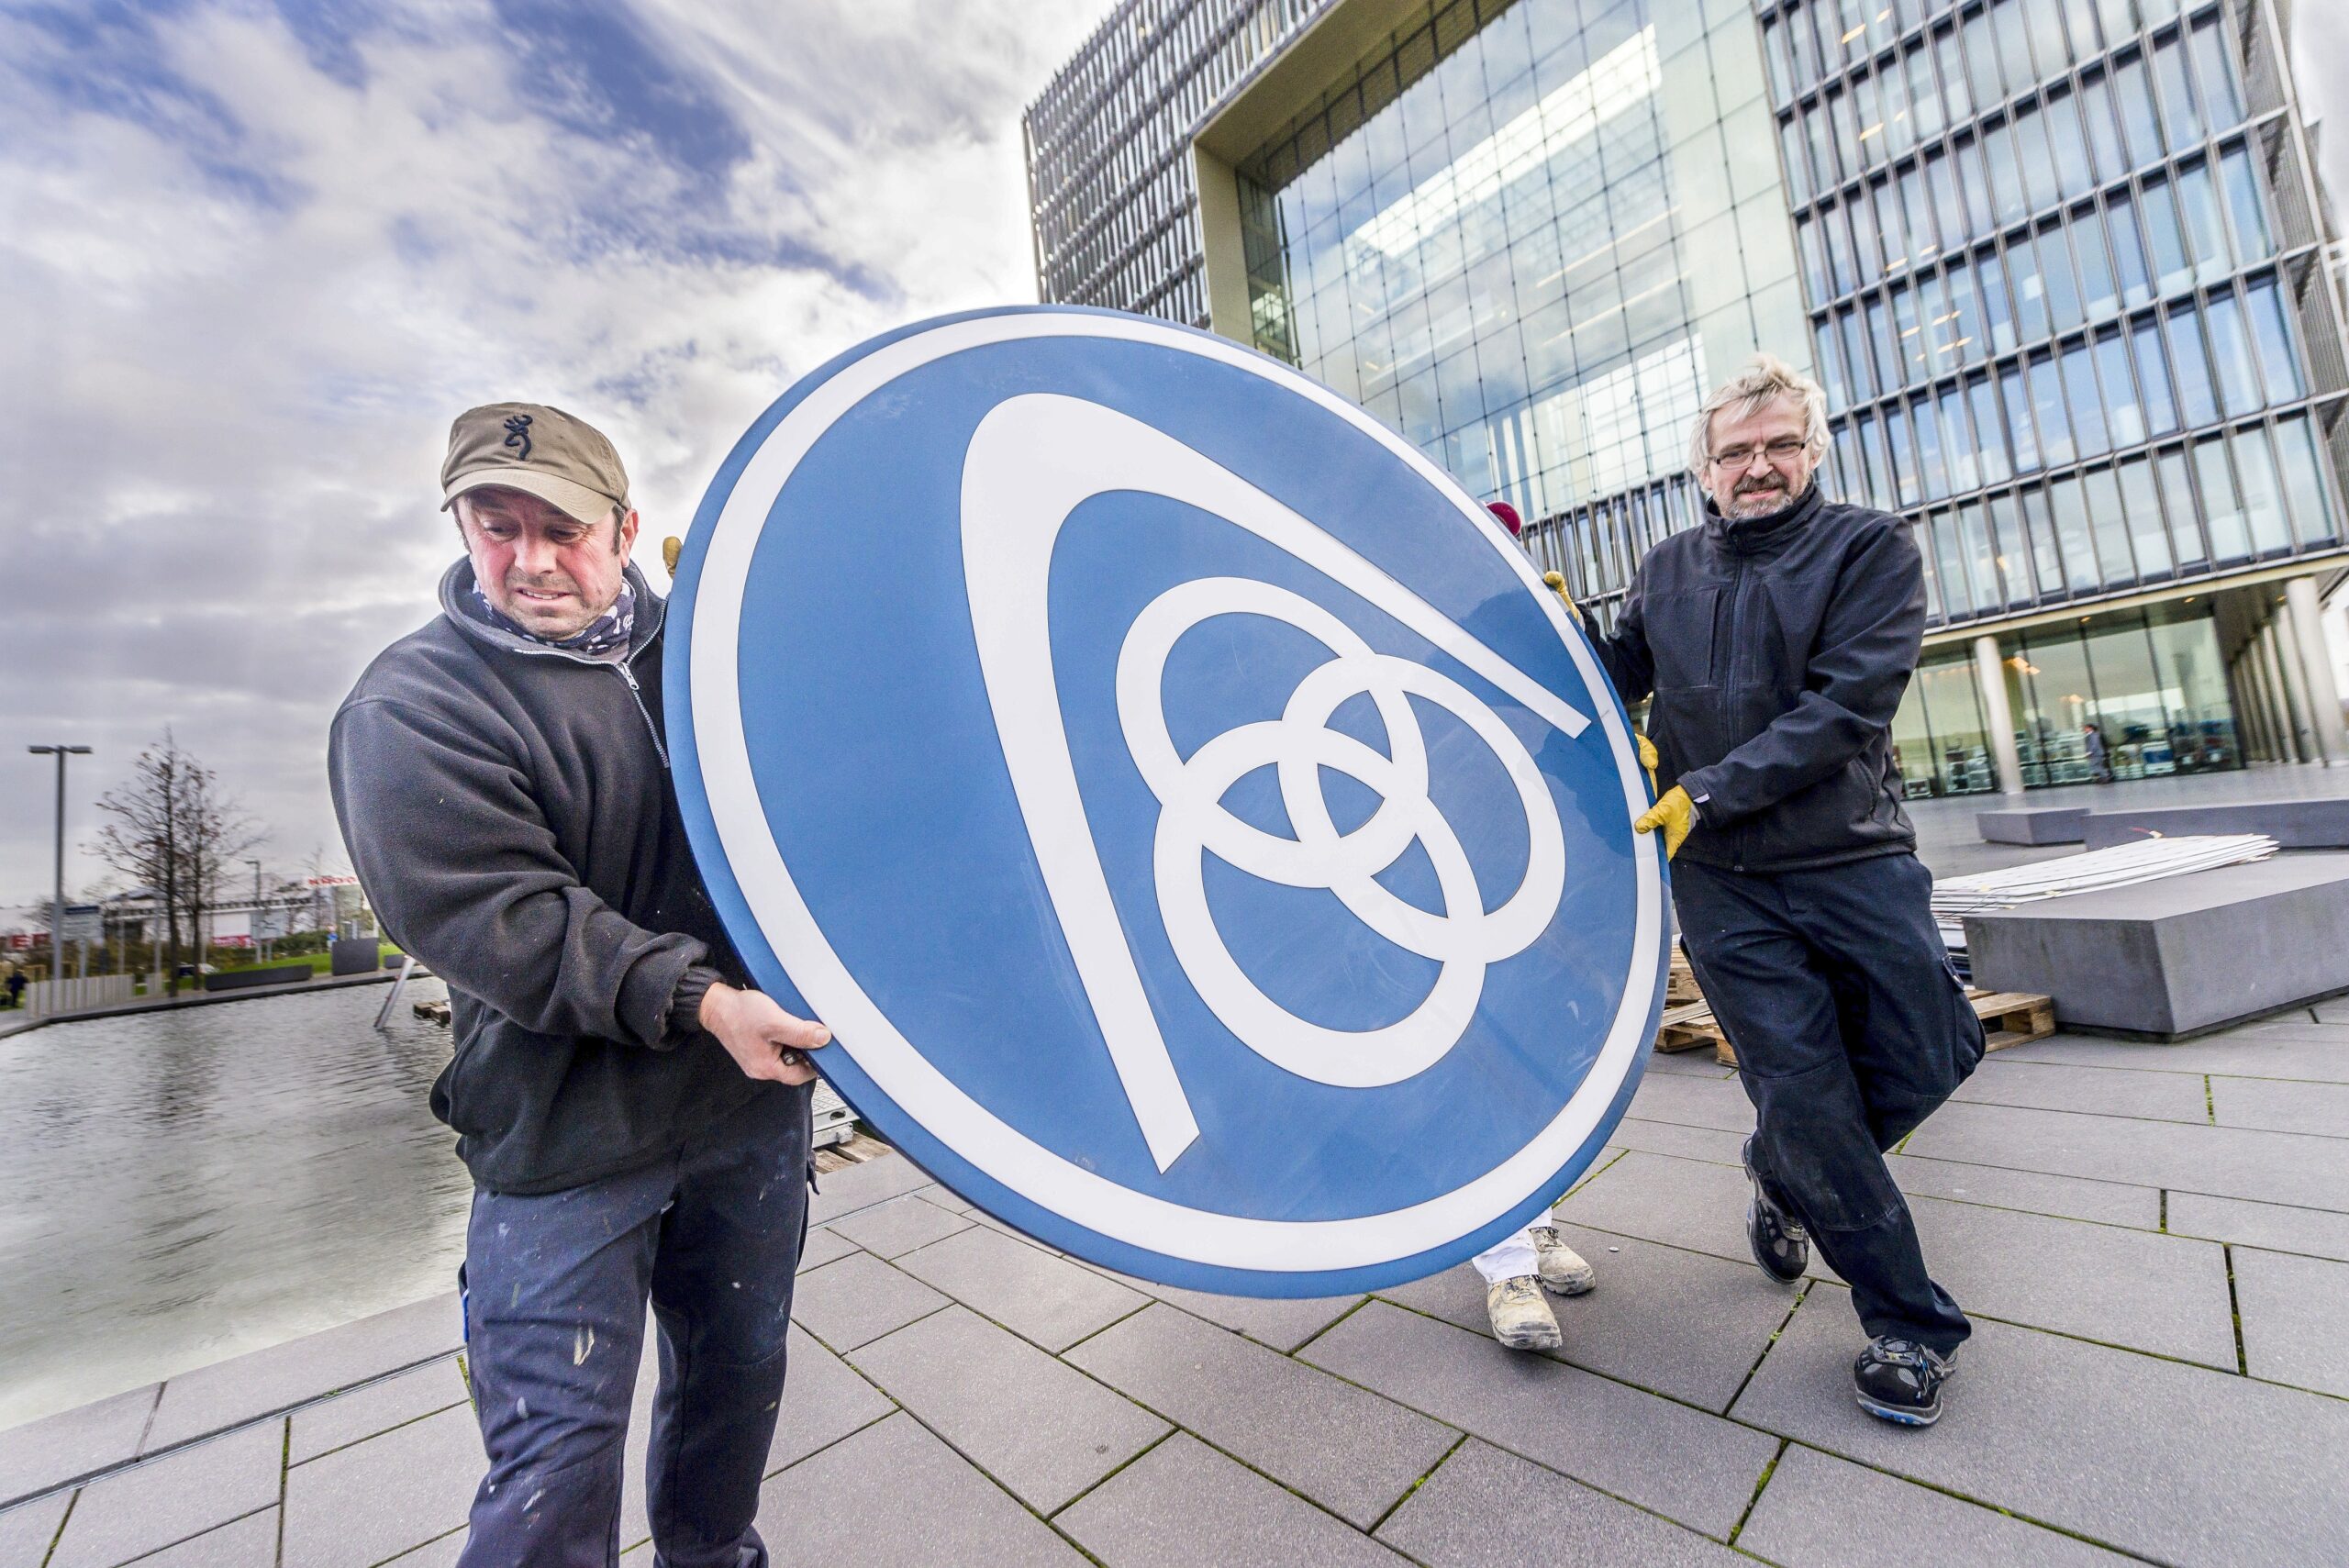 Am Mittwoch montierten Arbeiter das alte Logo vor der Thyssen-Krupp-Zentrale ab.